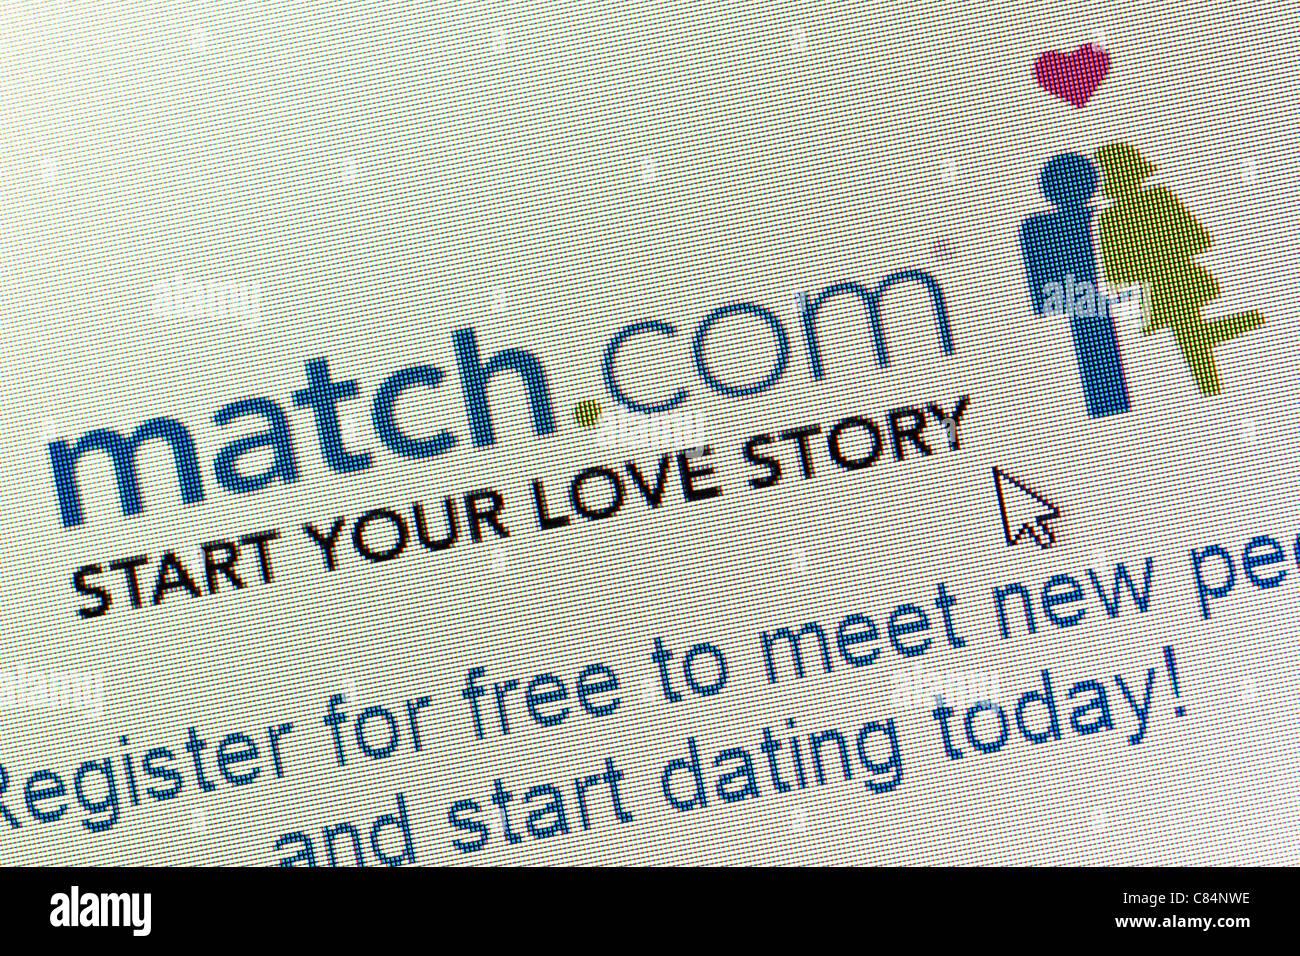 Match.com logo and website close up Stock Photo